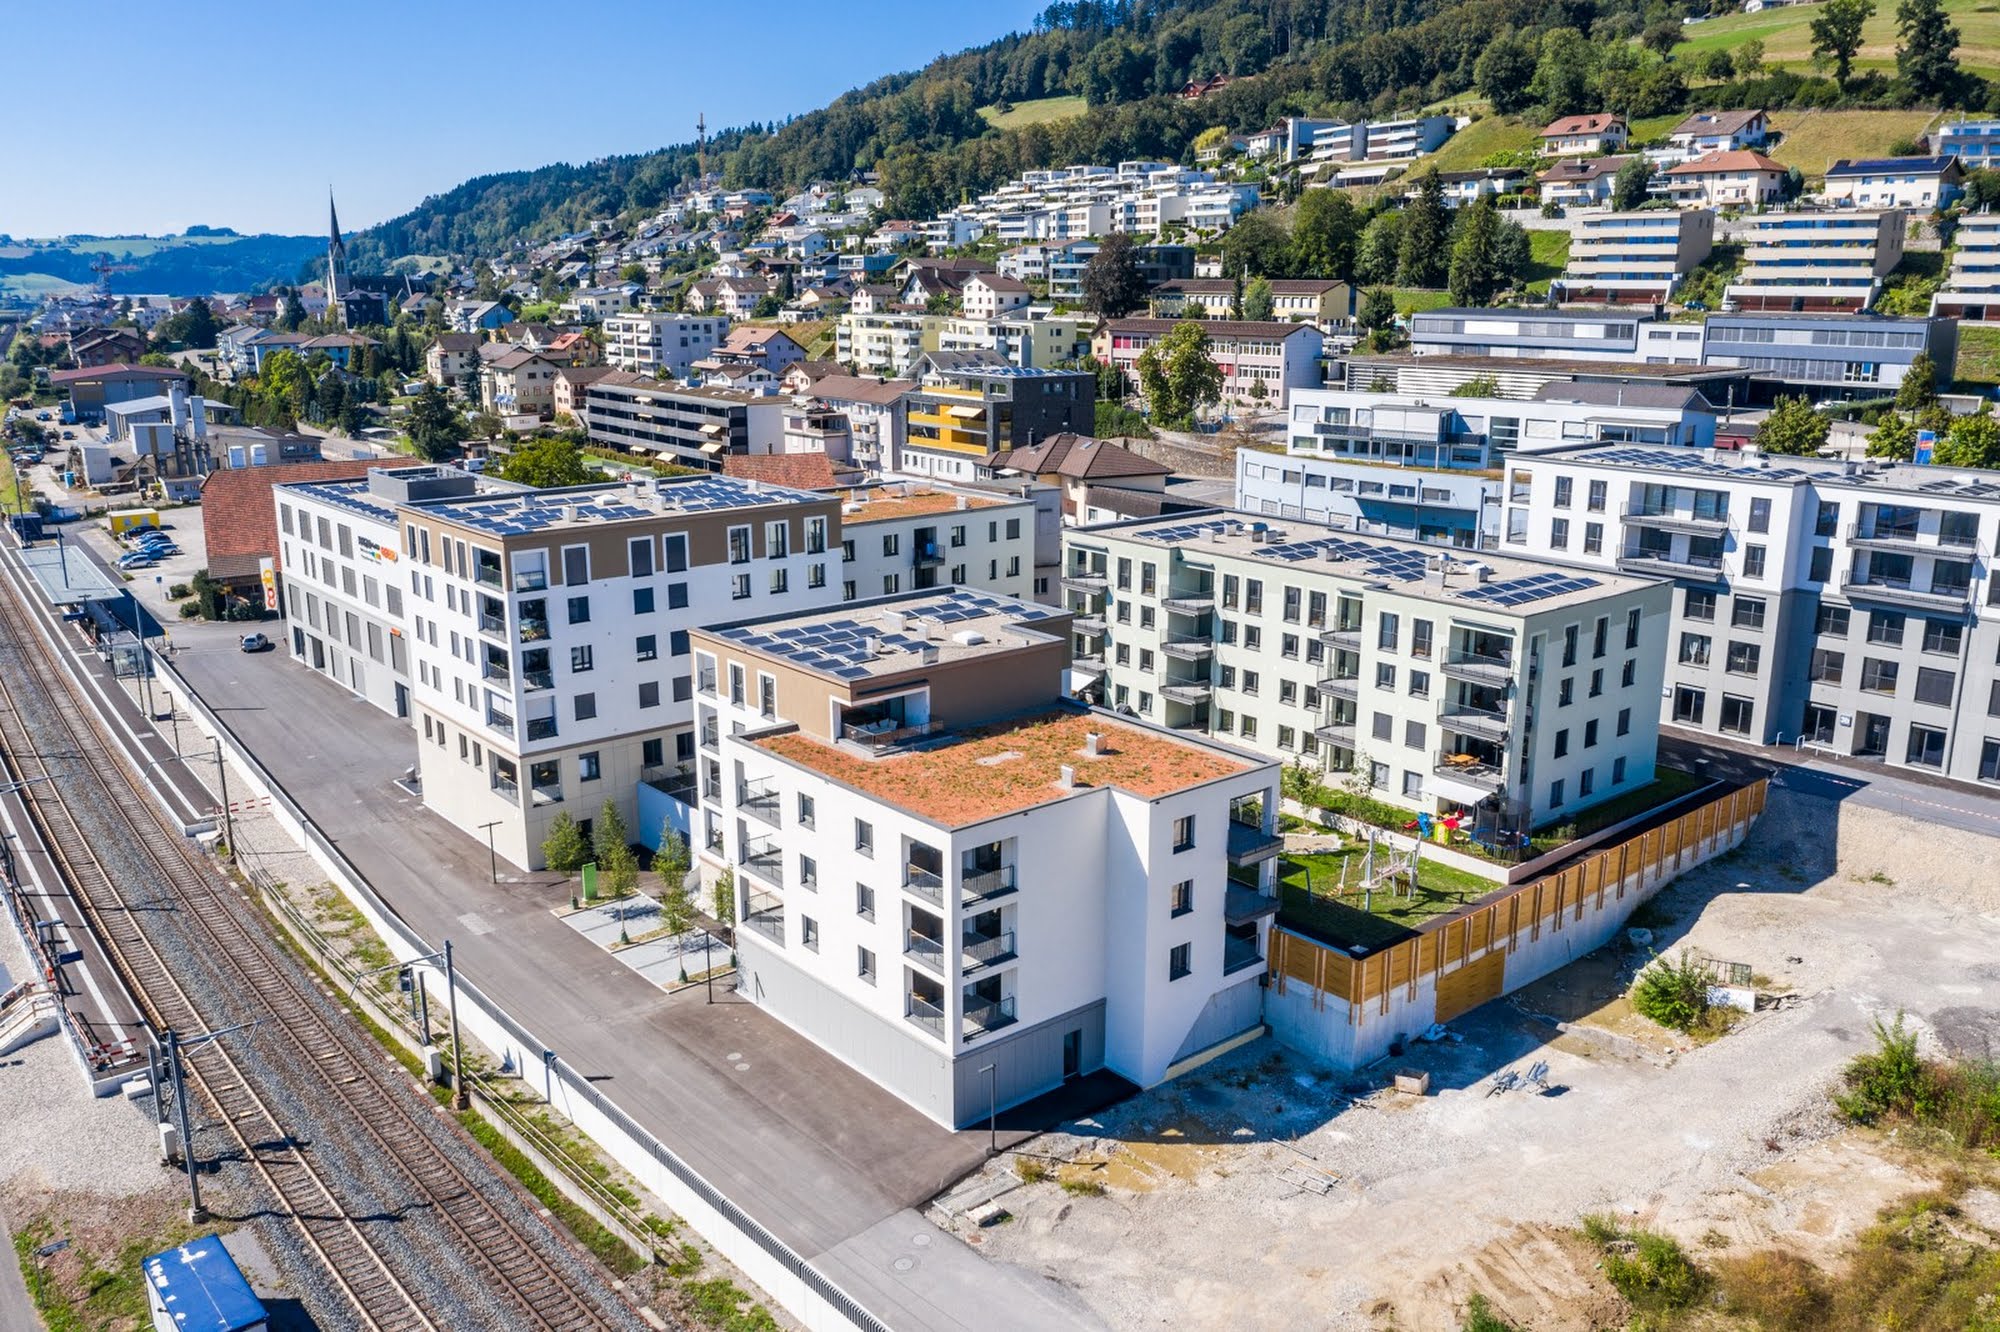 Wohnen MFH,Gewerbe Überbauung Glasi in Wauwil Architektur,Wohnungsbau,Wohnhäuser,Einfamilienhäuser,Mehrfamilienhäuser